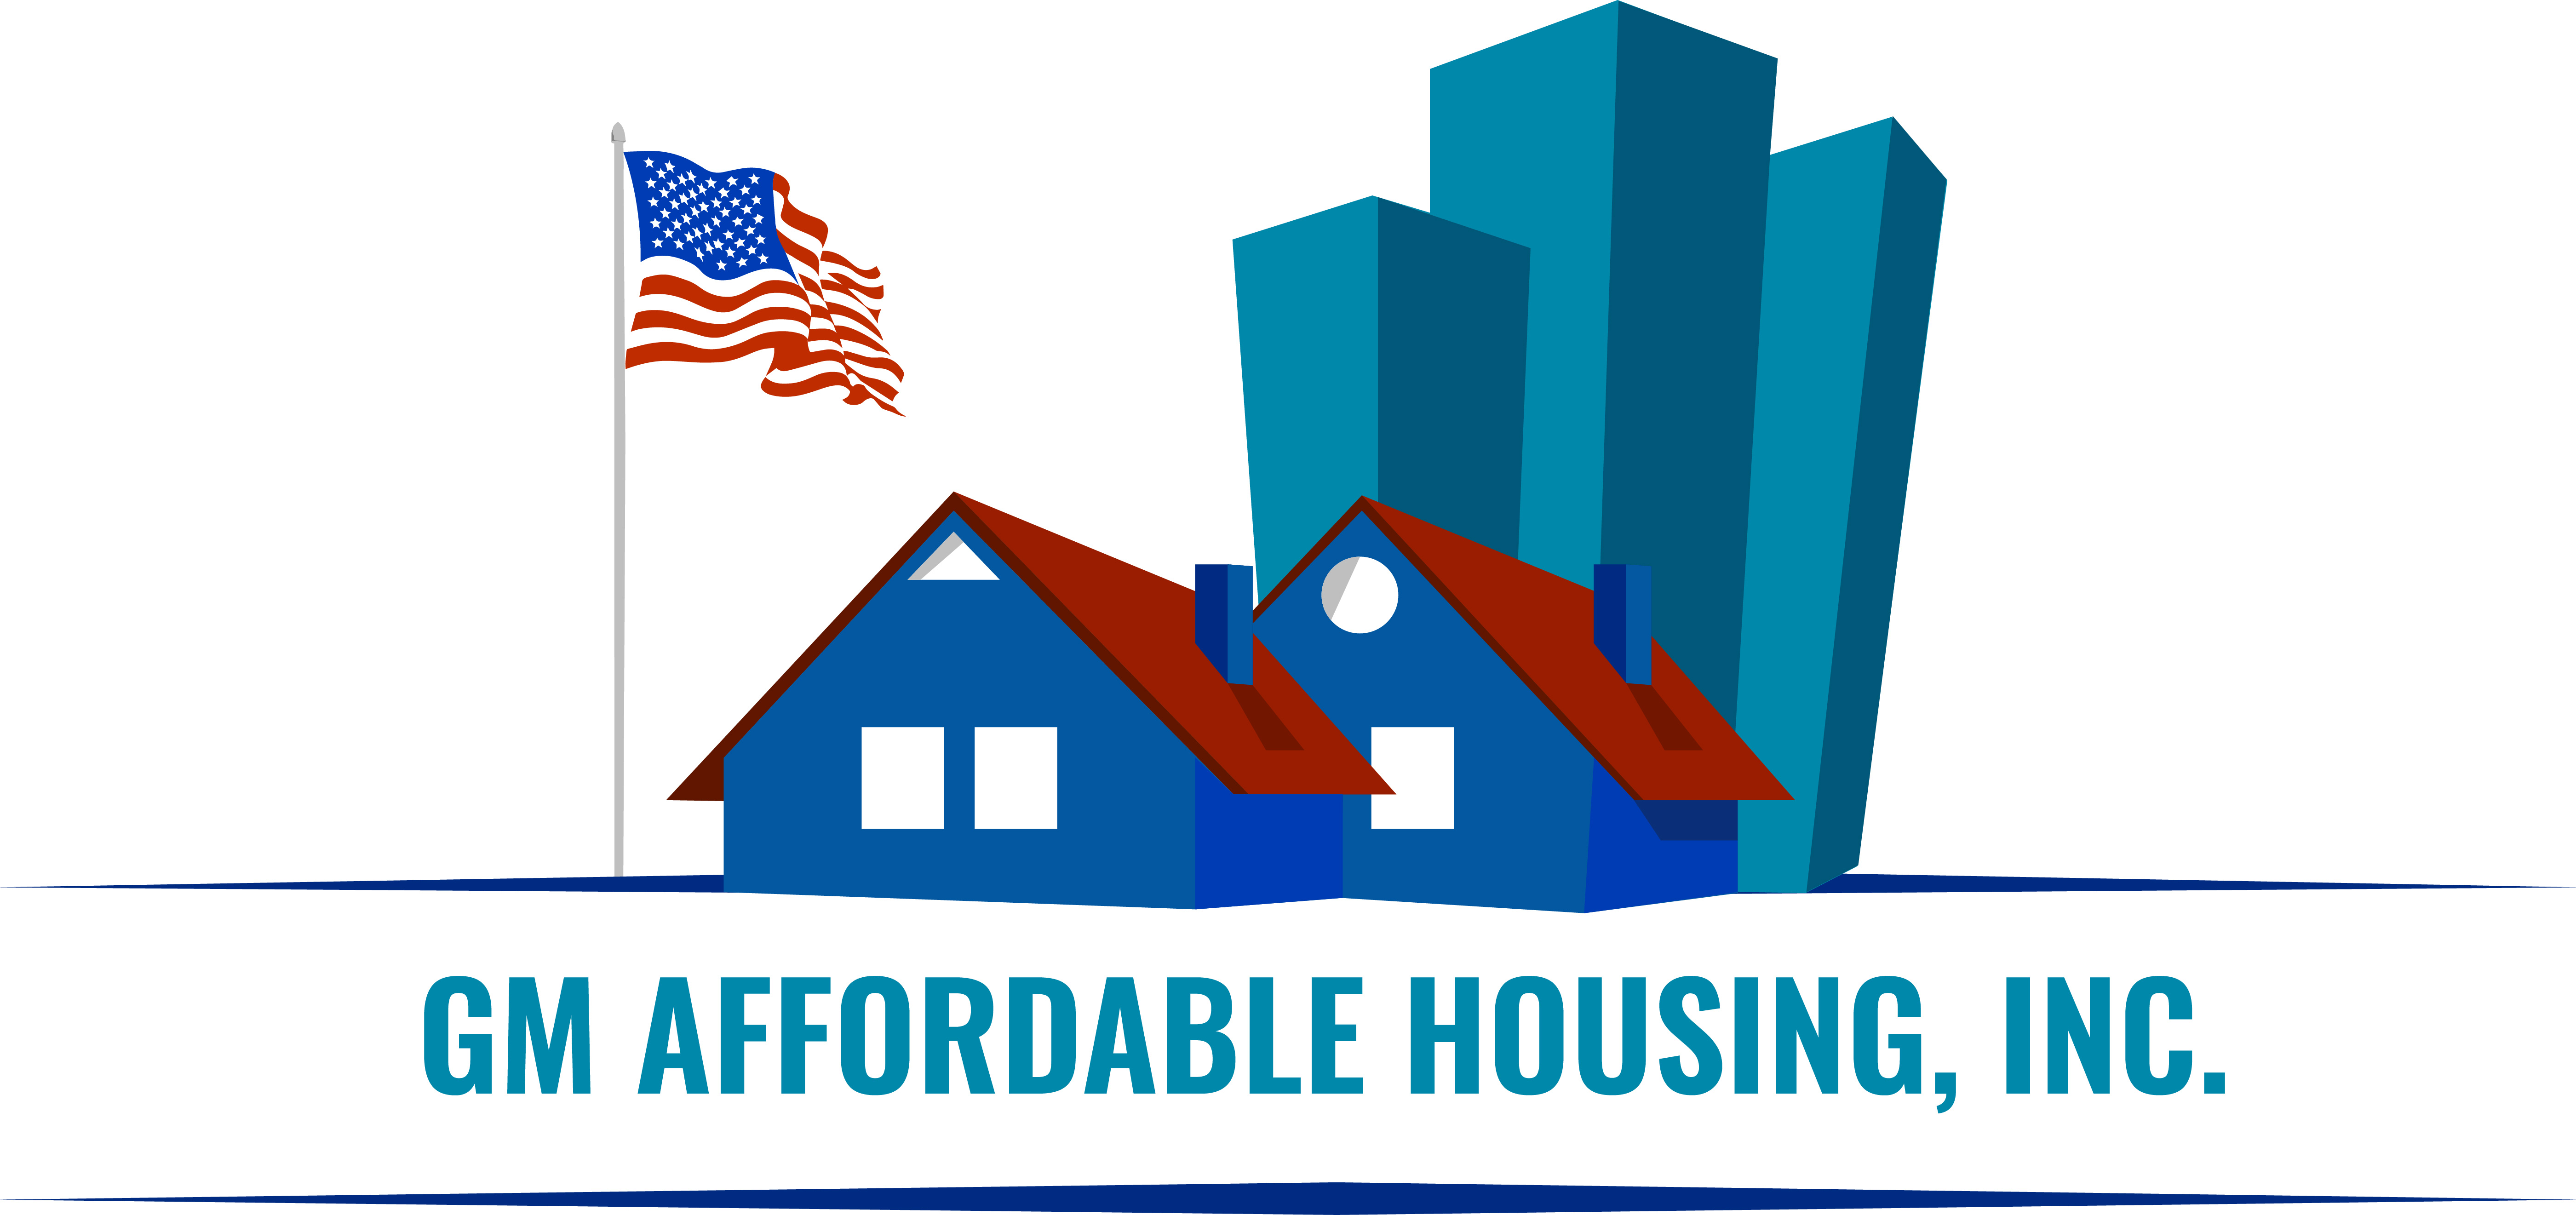 Provide Housing